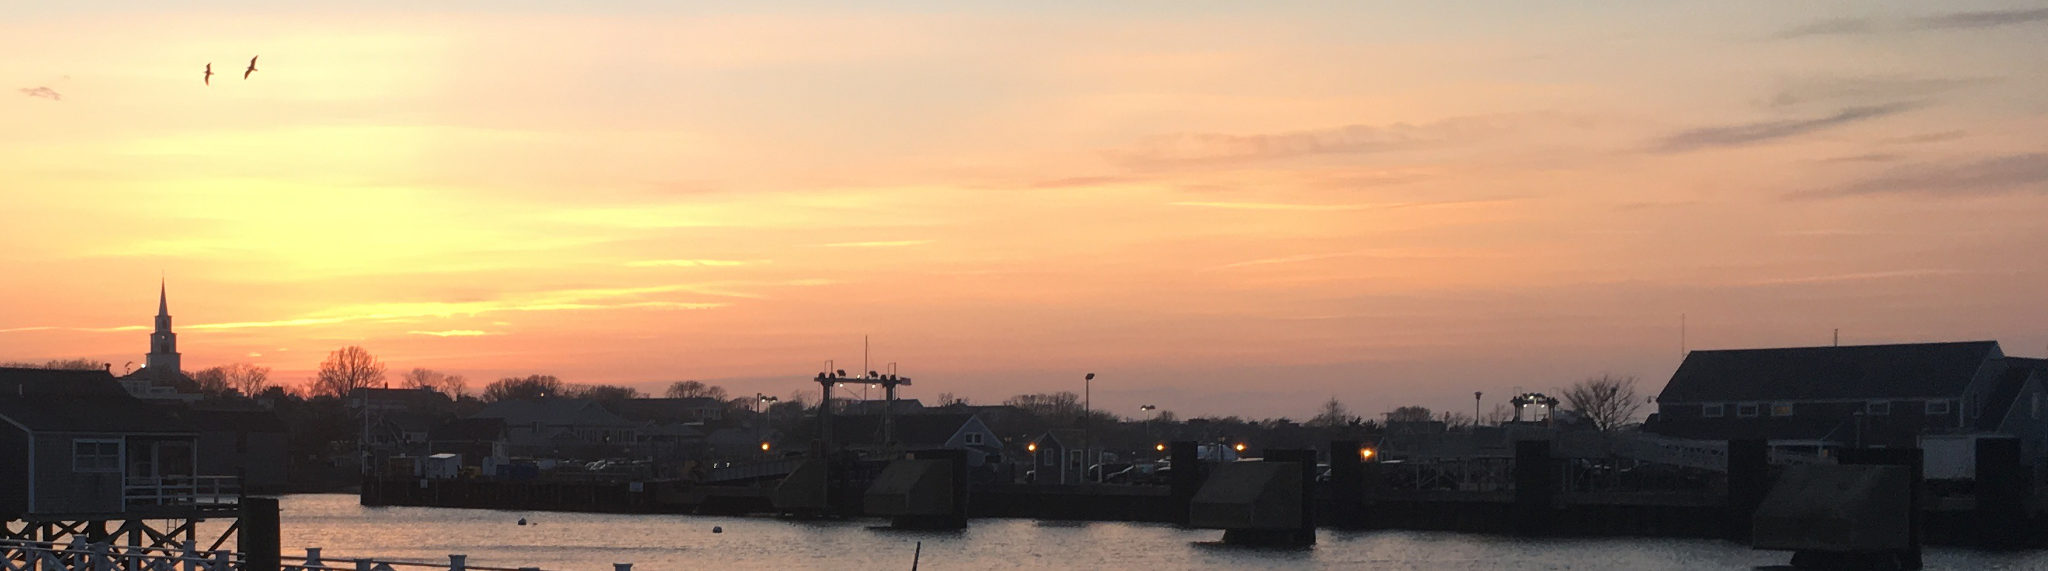 Sunset over Nantucket Harbor